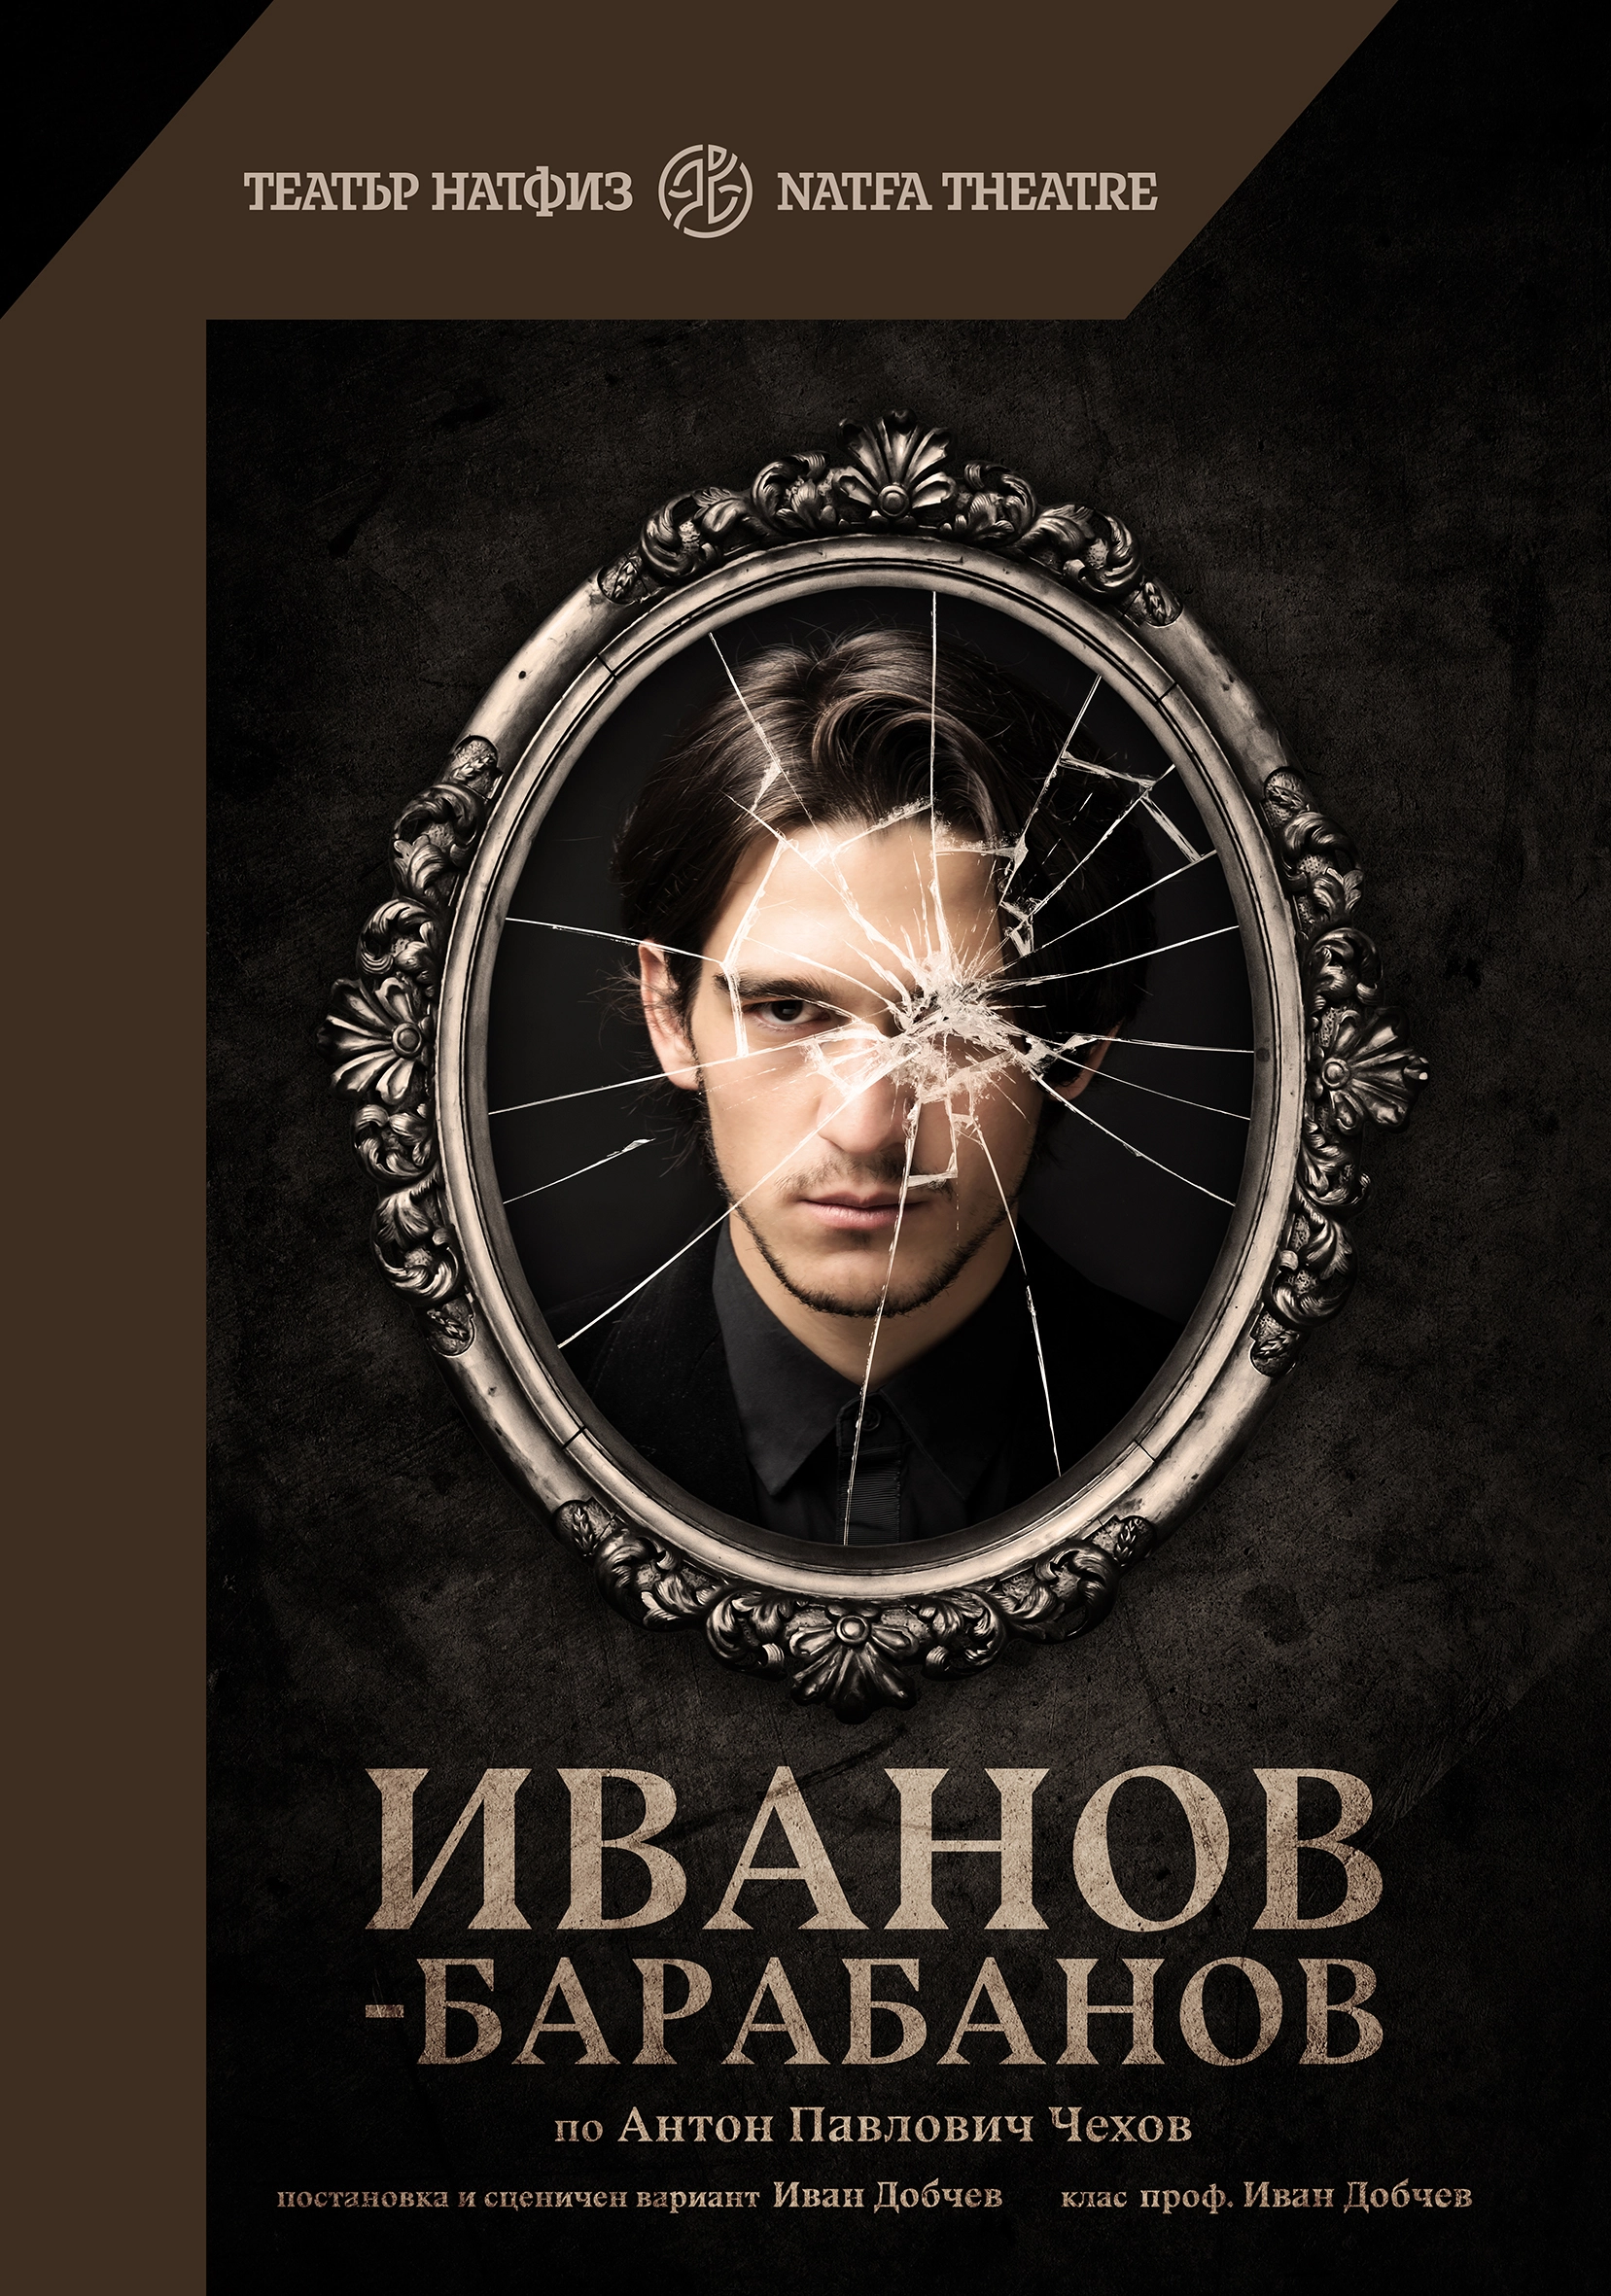 548-plakat-ivanov-barabanov-70x100-1-17046727830507.jpg